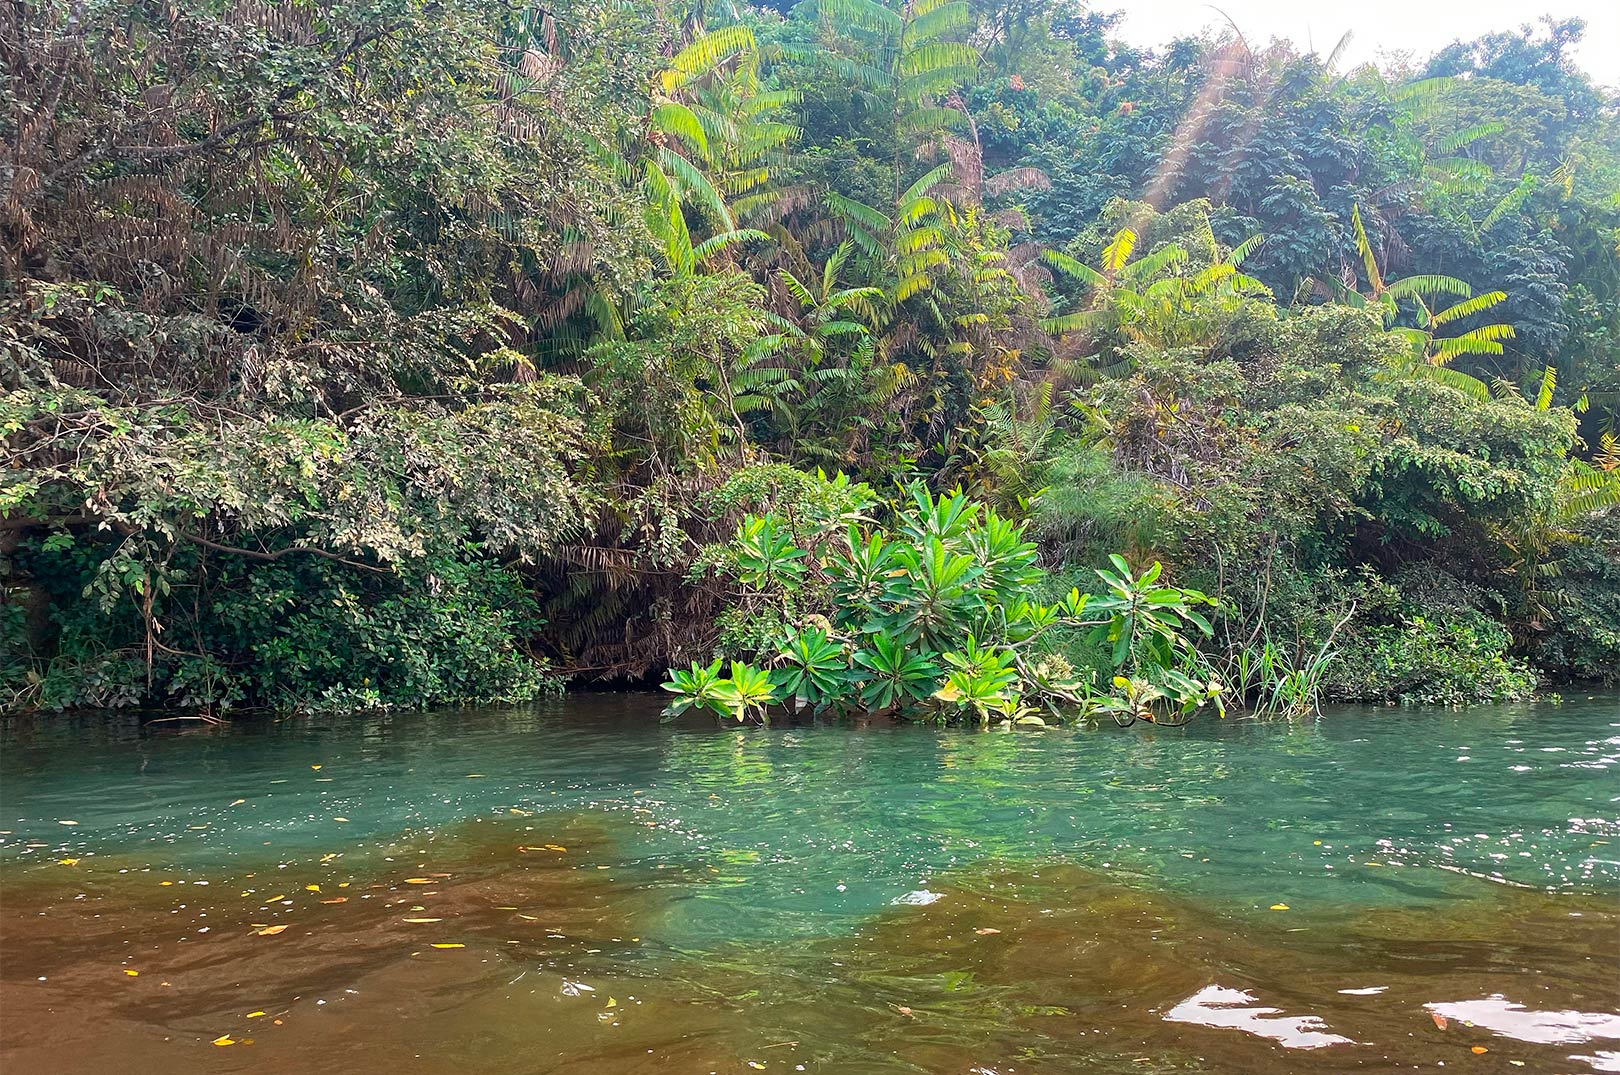 Sådan ser det ud, hvor det spritklare vand i sidefloderne - møder vandet fra den mudrede og kakaofarvede hovedflod - Congo.